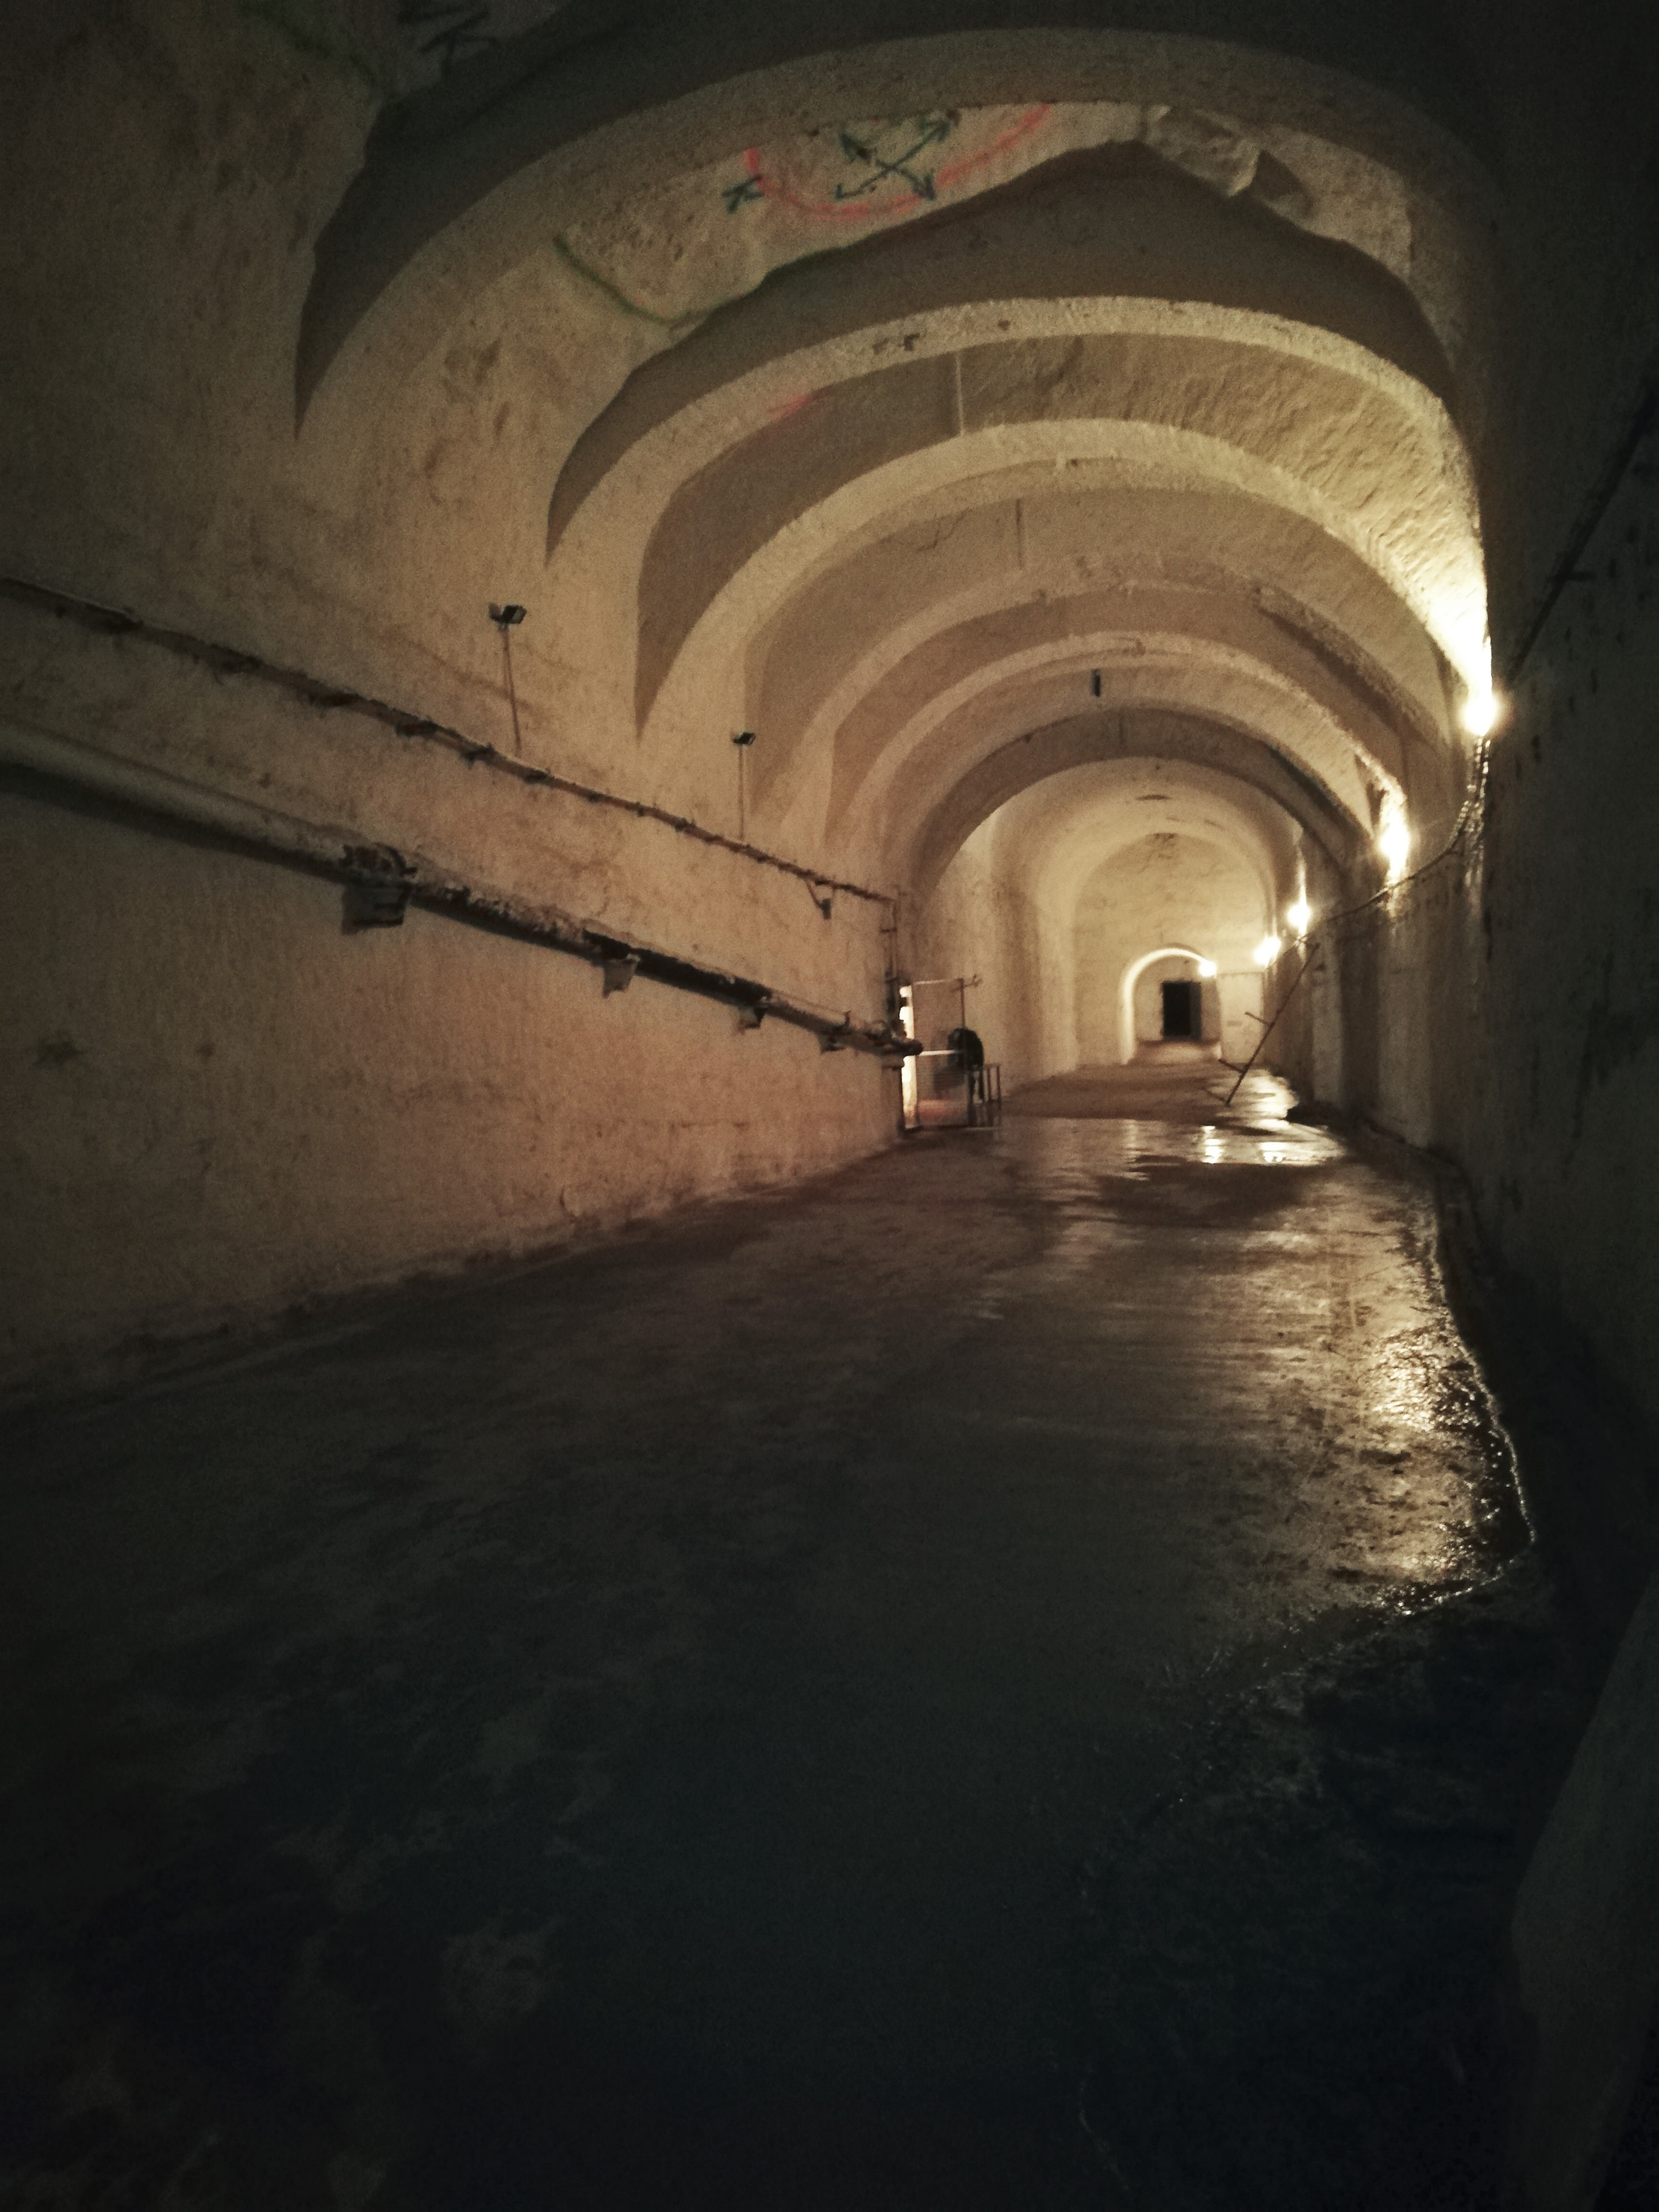 Kőbánya cellar system inside